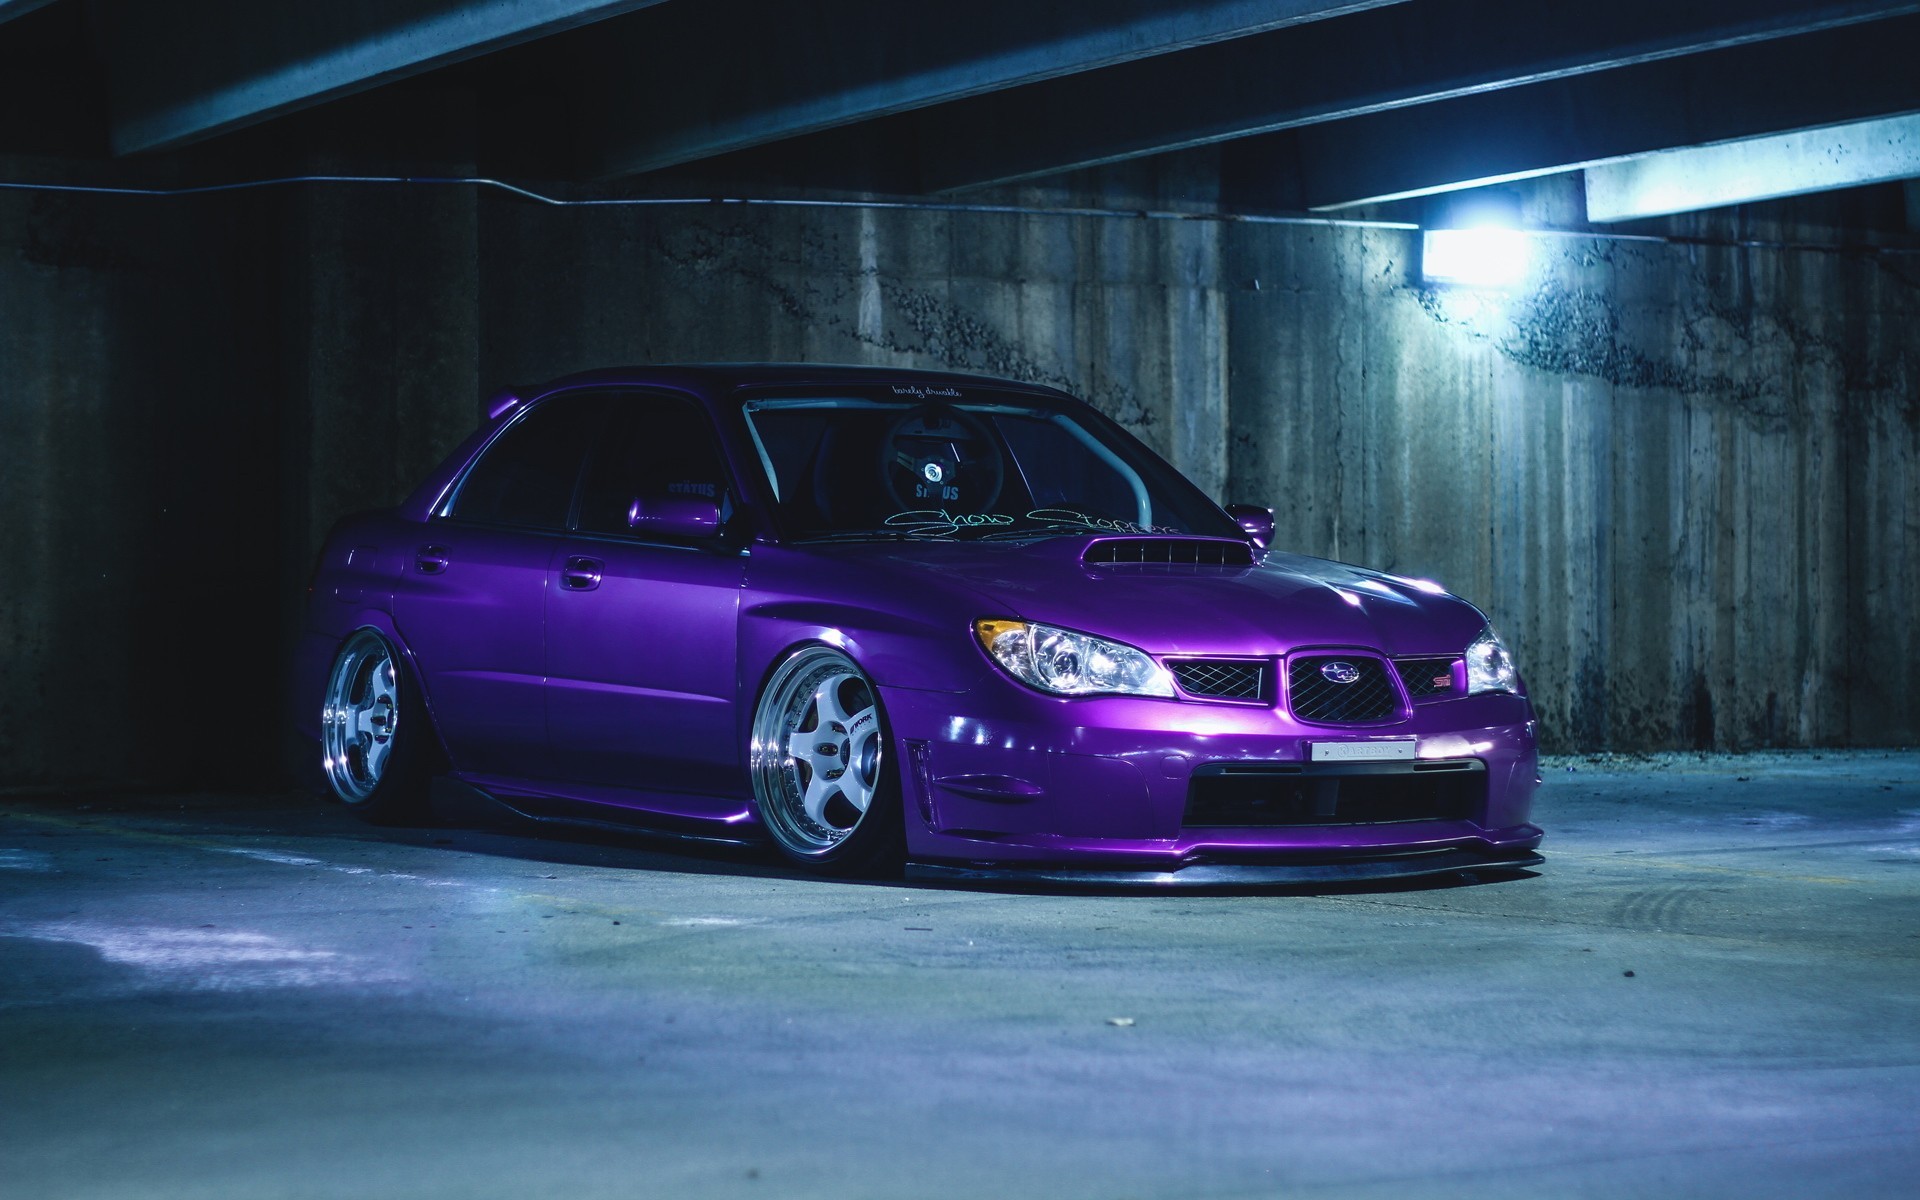 免费照片地下停车场的紫色斯巴鲁。